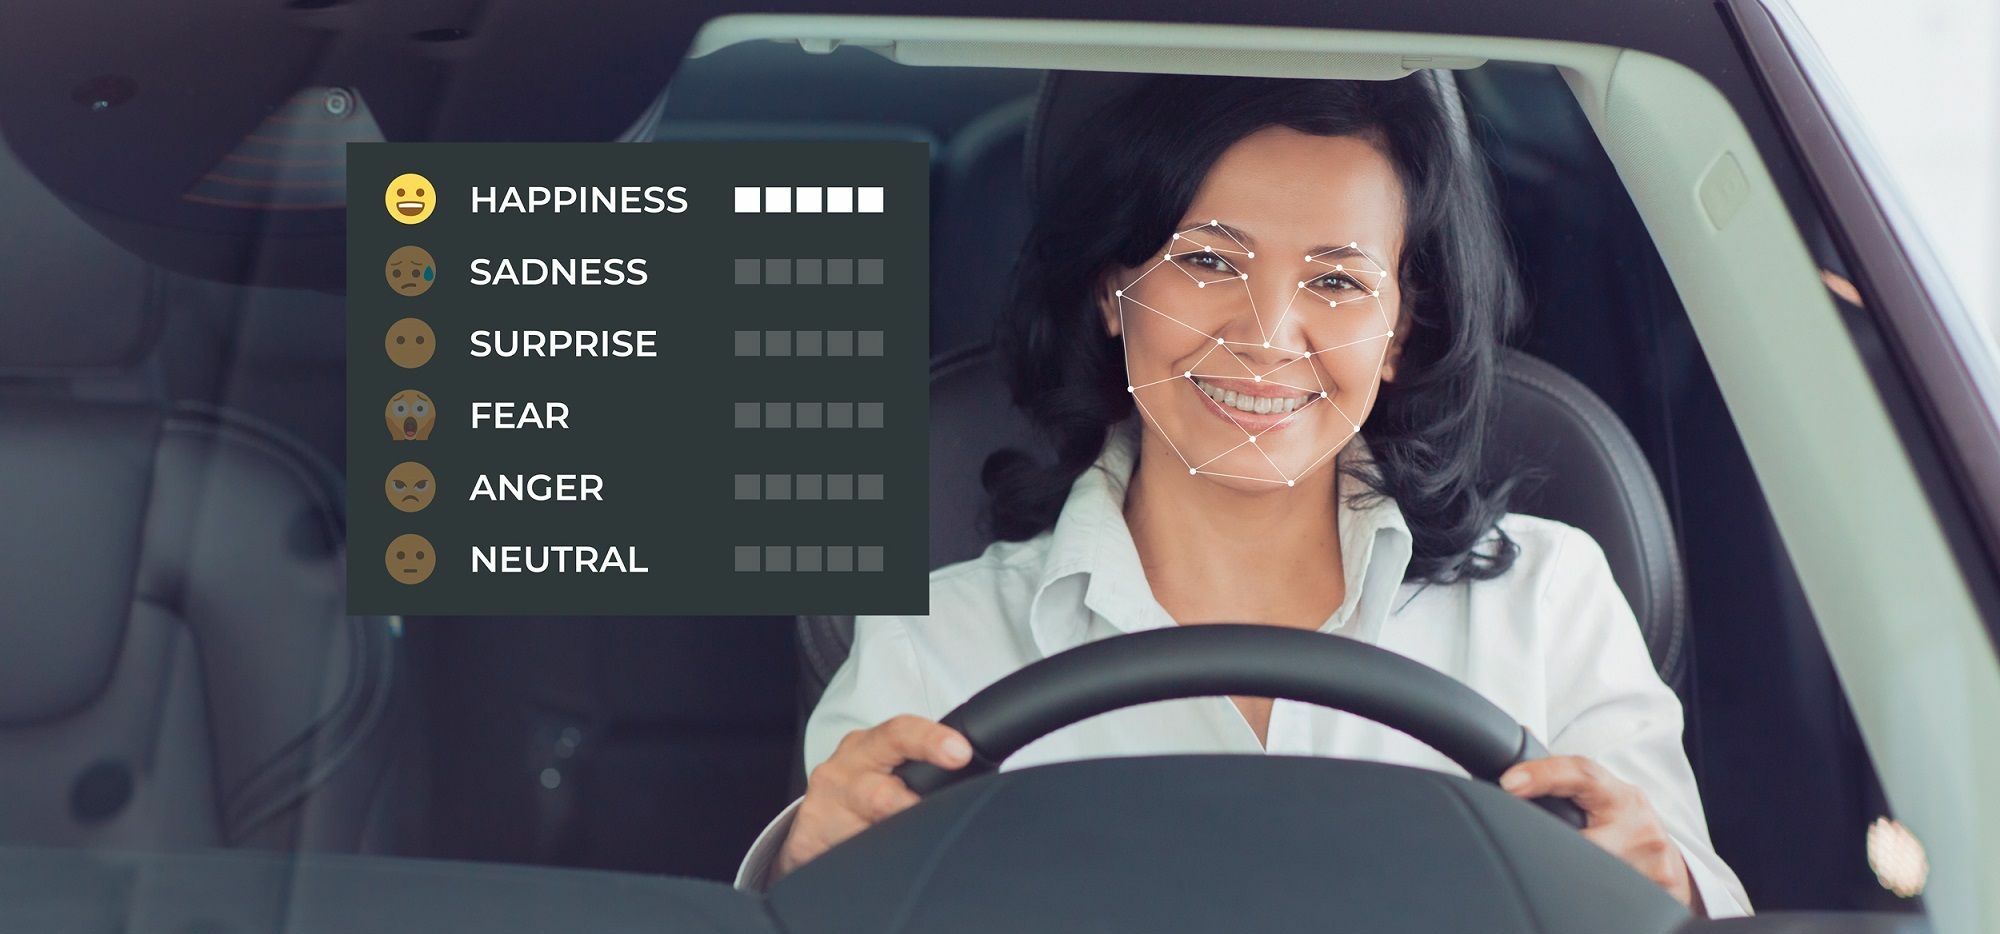 Détection des émotions faciales sur une femme dans une voiture